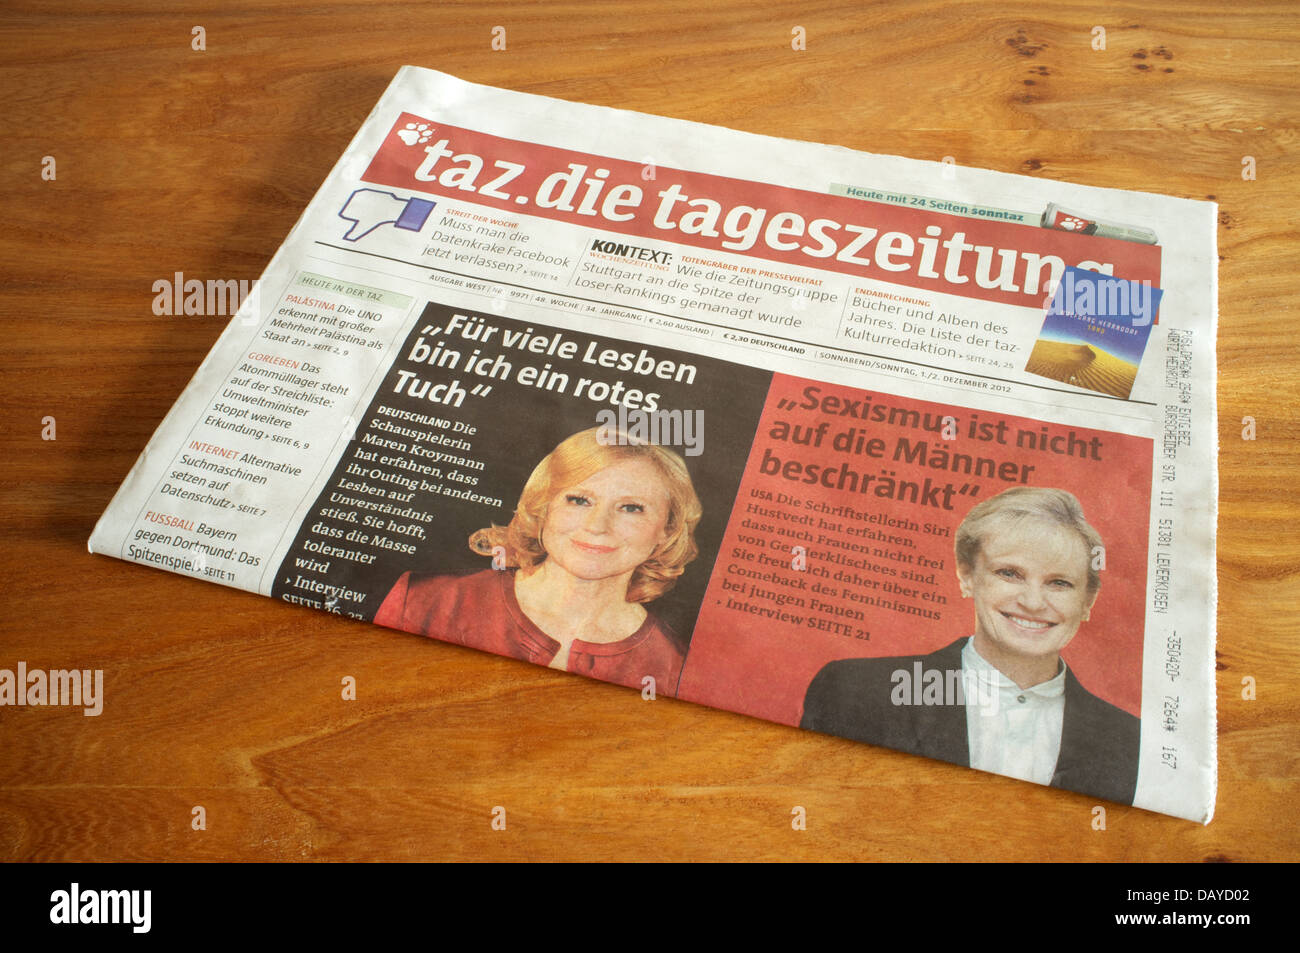 Taz tageszeitung newspaper Stock Photo